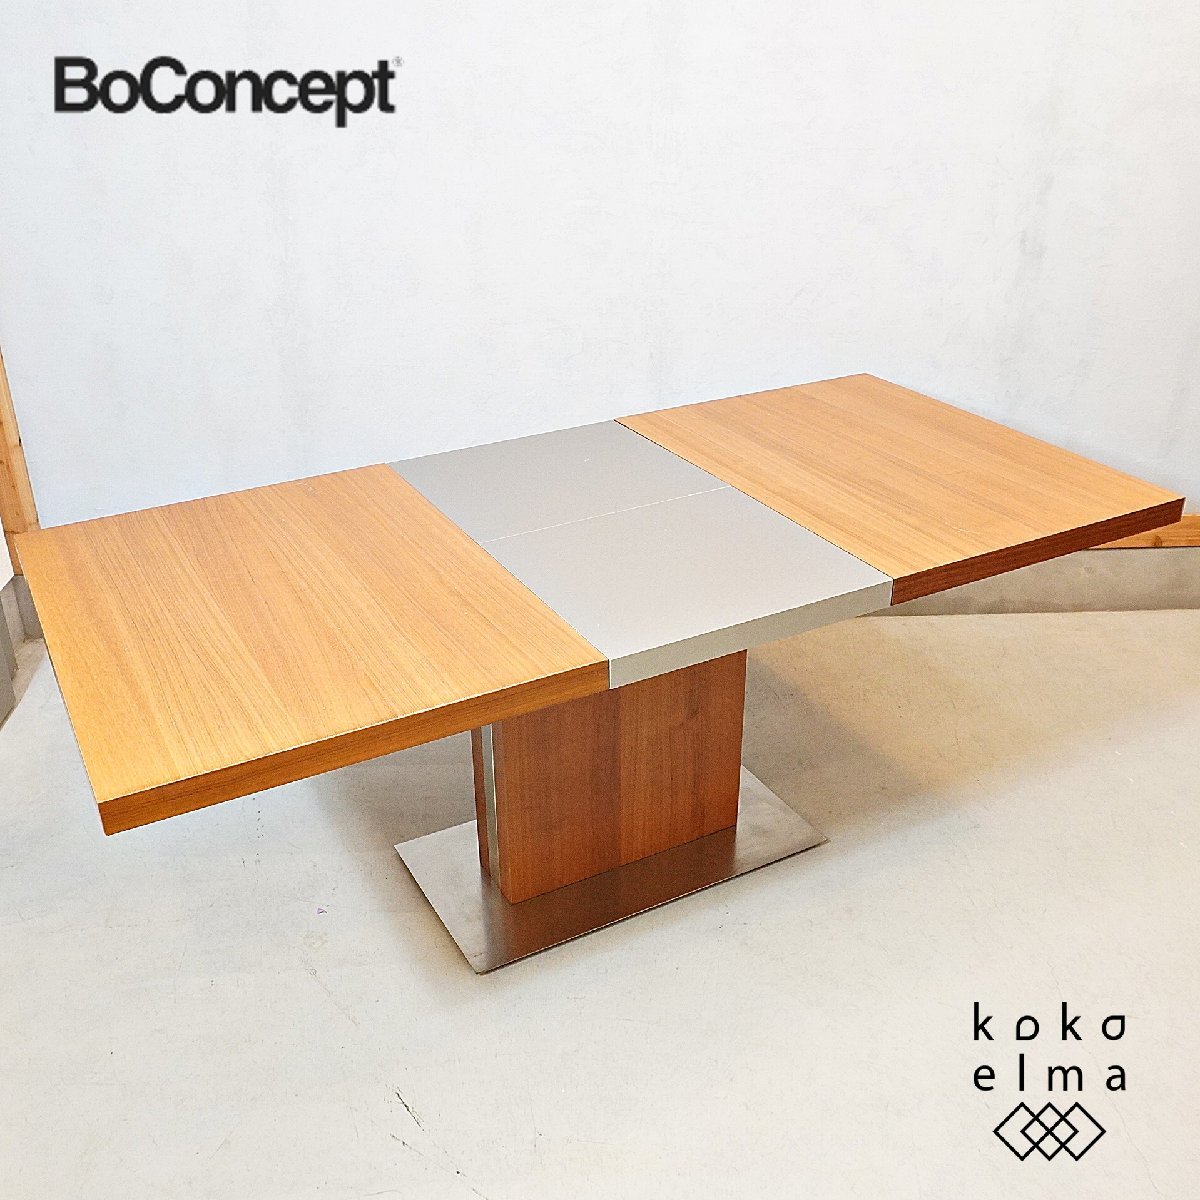 BoConcept ボーコンセプト occa オッカ ウォールナット 伸長式ダイニングテーブル エクステンション モダン 北欧デンマーク DK123の画像1